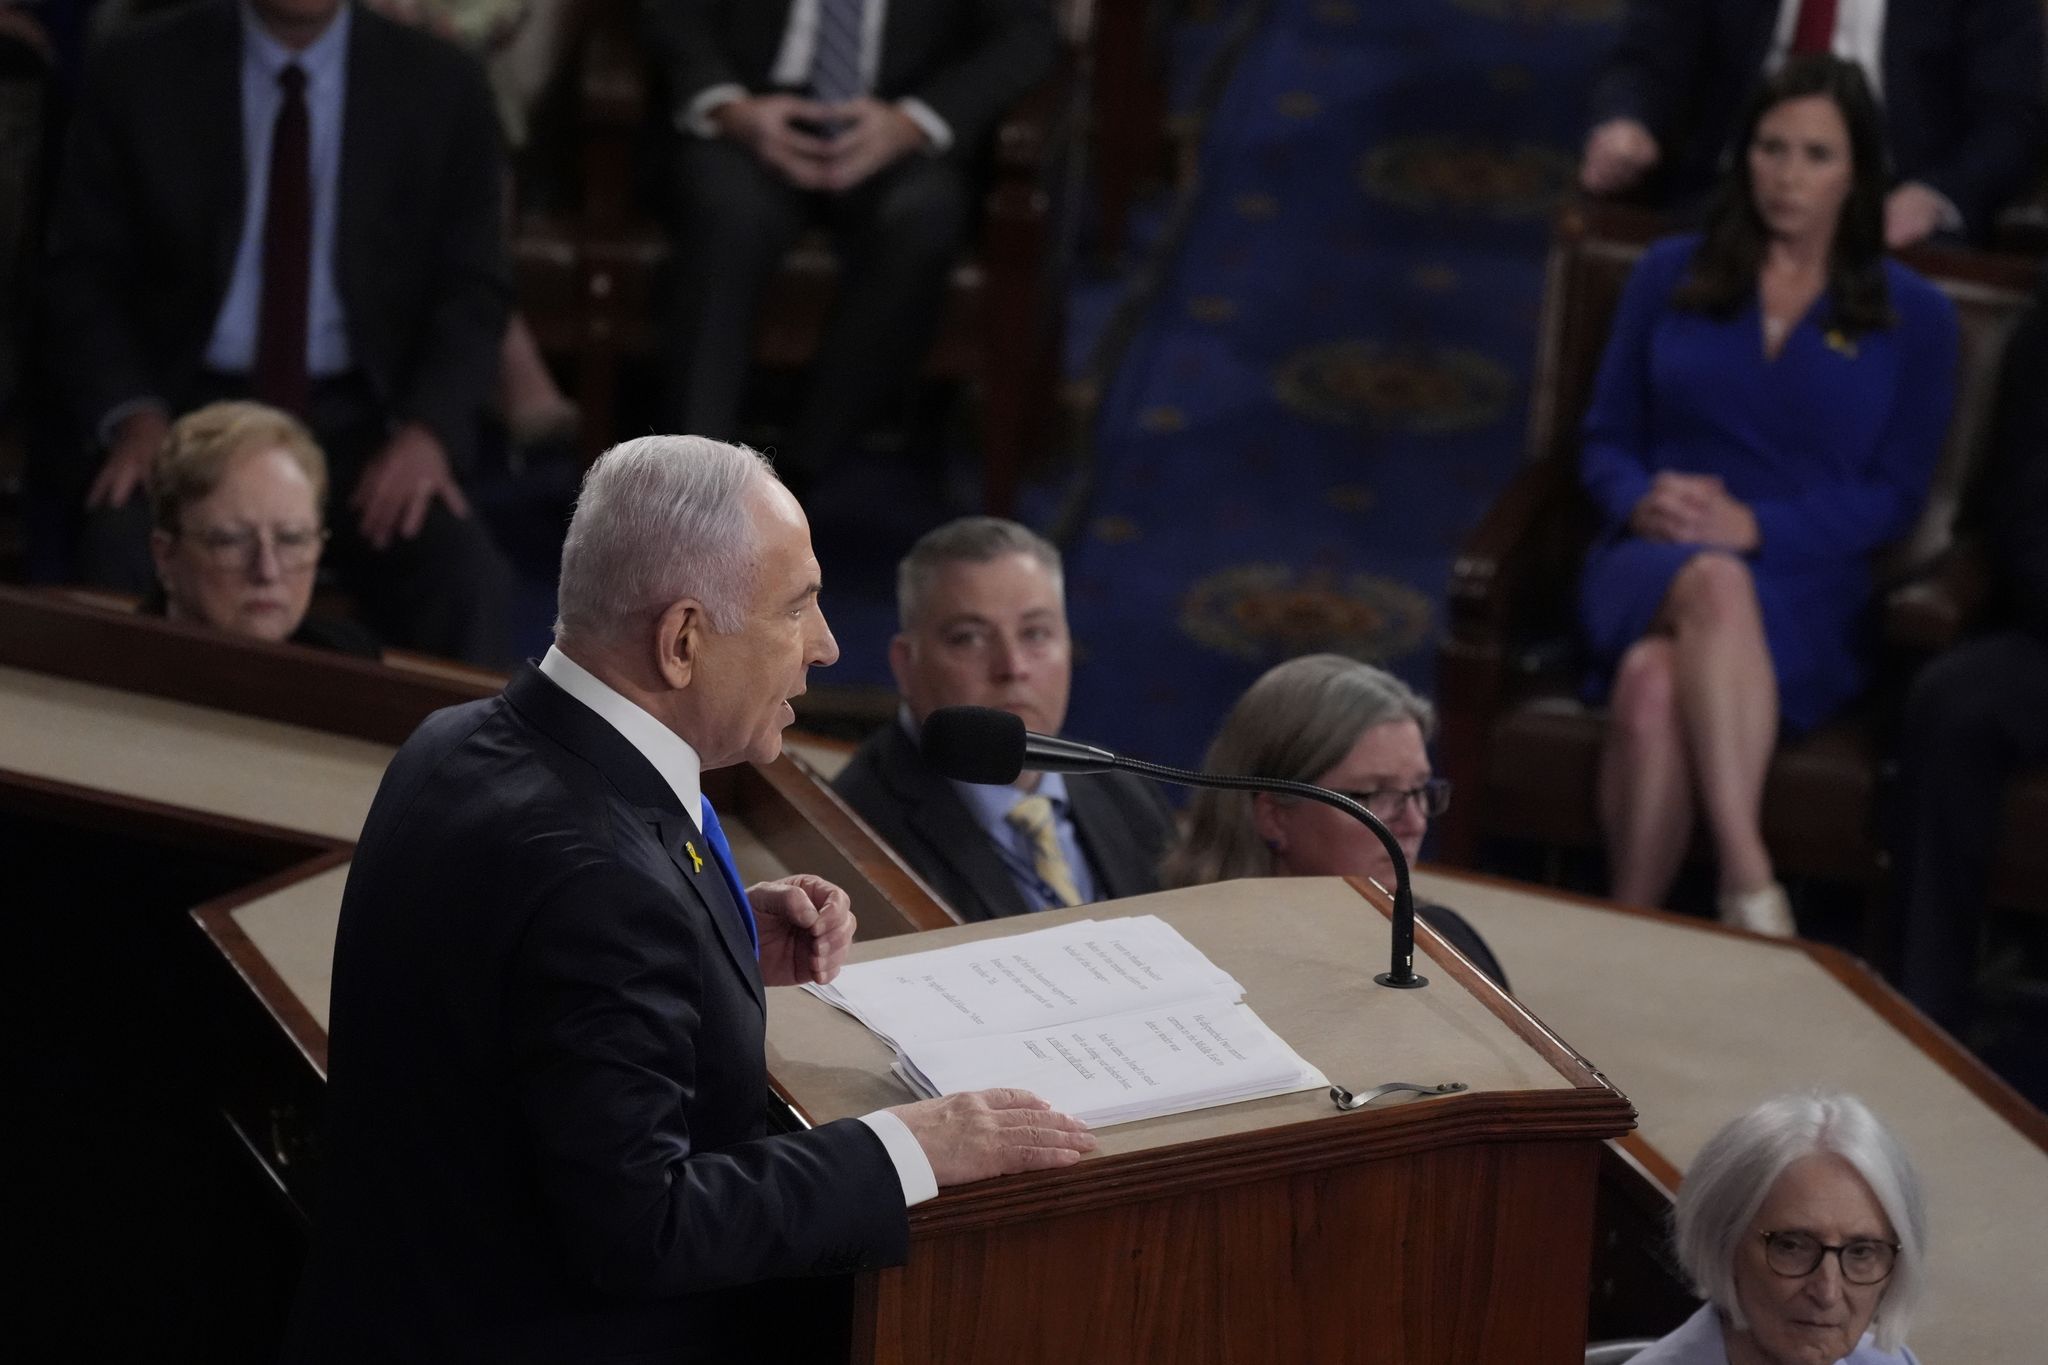 Geisel-Familien: Netanjahus US-Rede ist politisches Theater